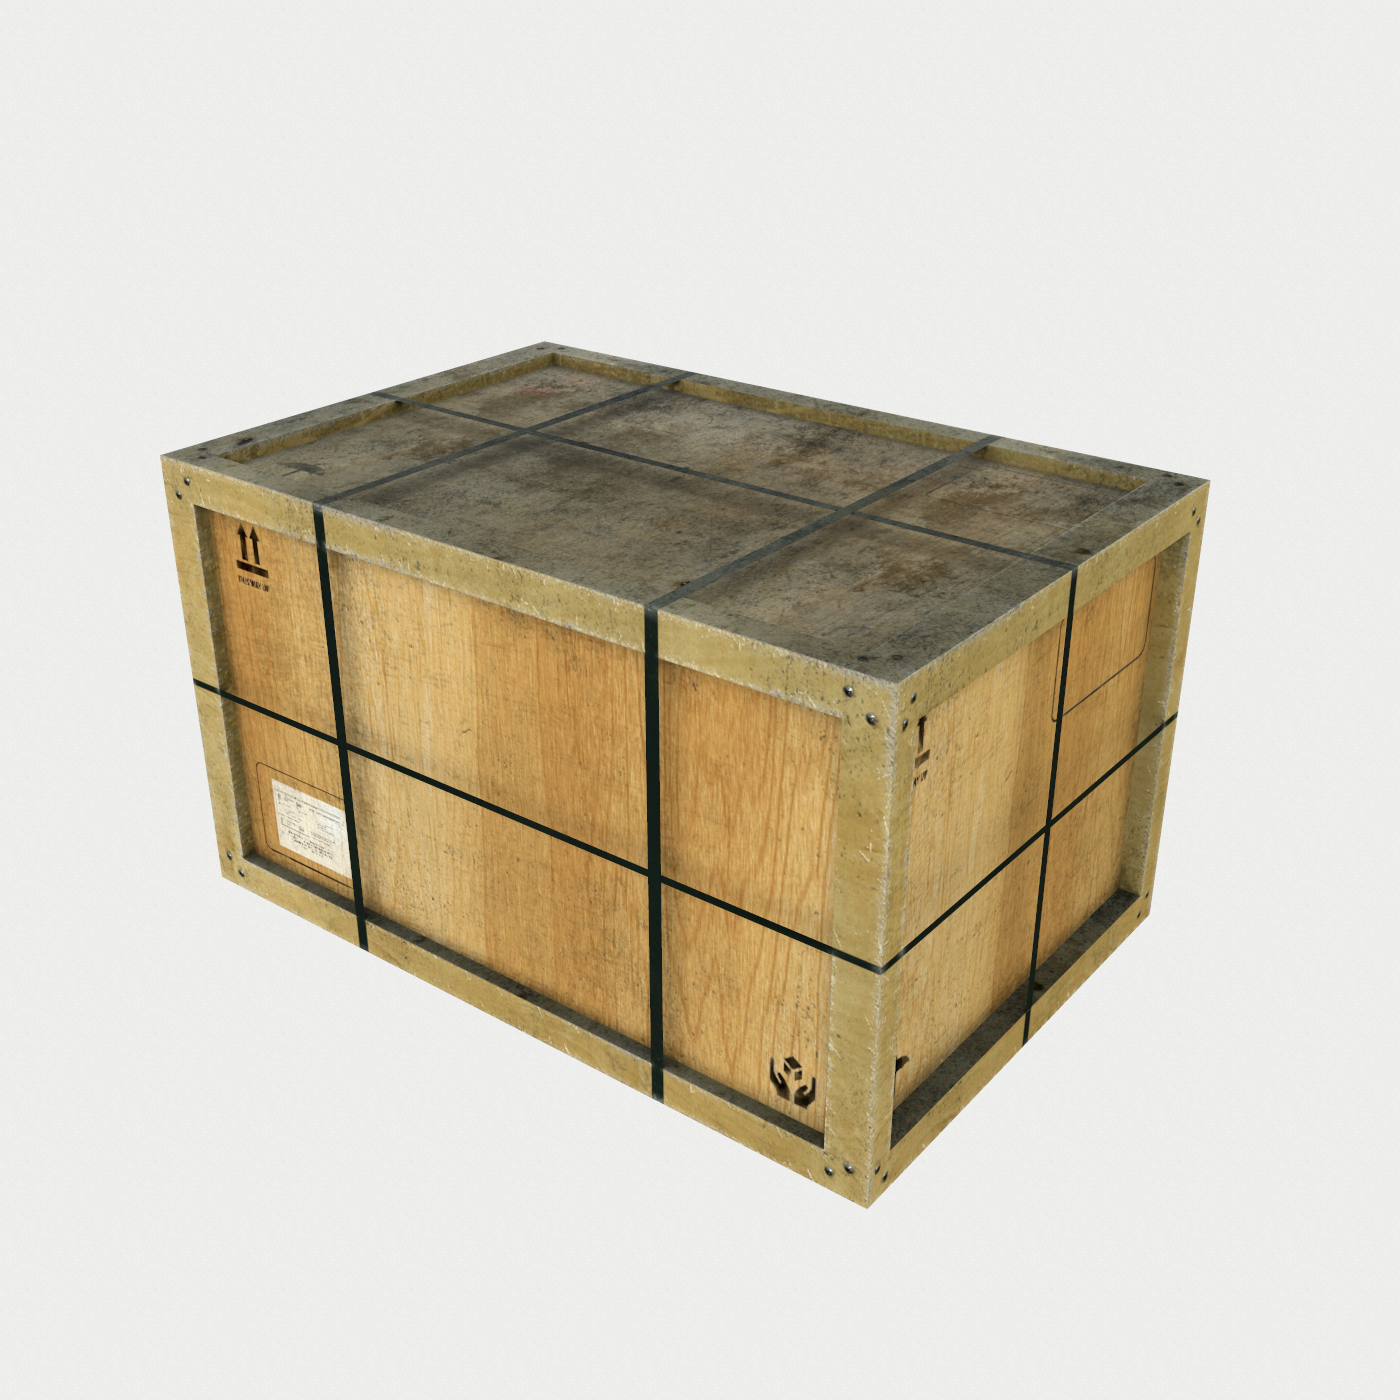 Dusty Wooden Cargo Crates Pbr 3d Modell In Werkzeuge 3dexport